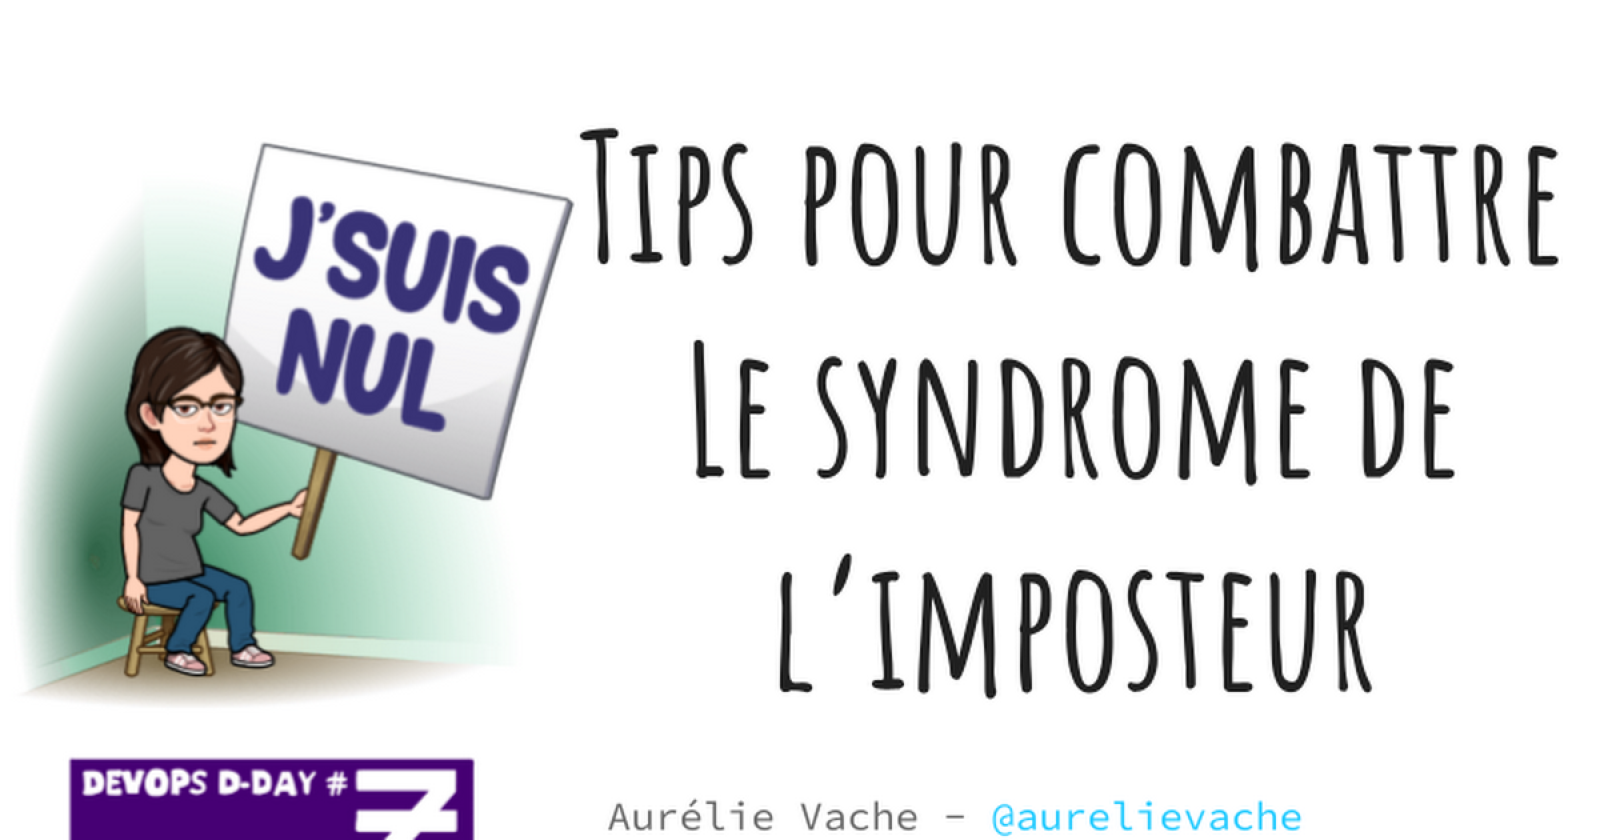 Tips pour combattre le syndrome de l’imposteur by Aurélie Vache